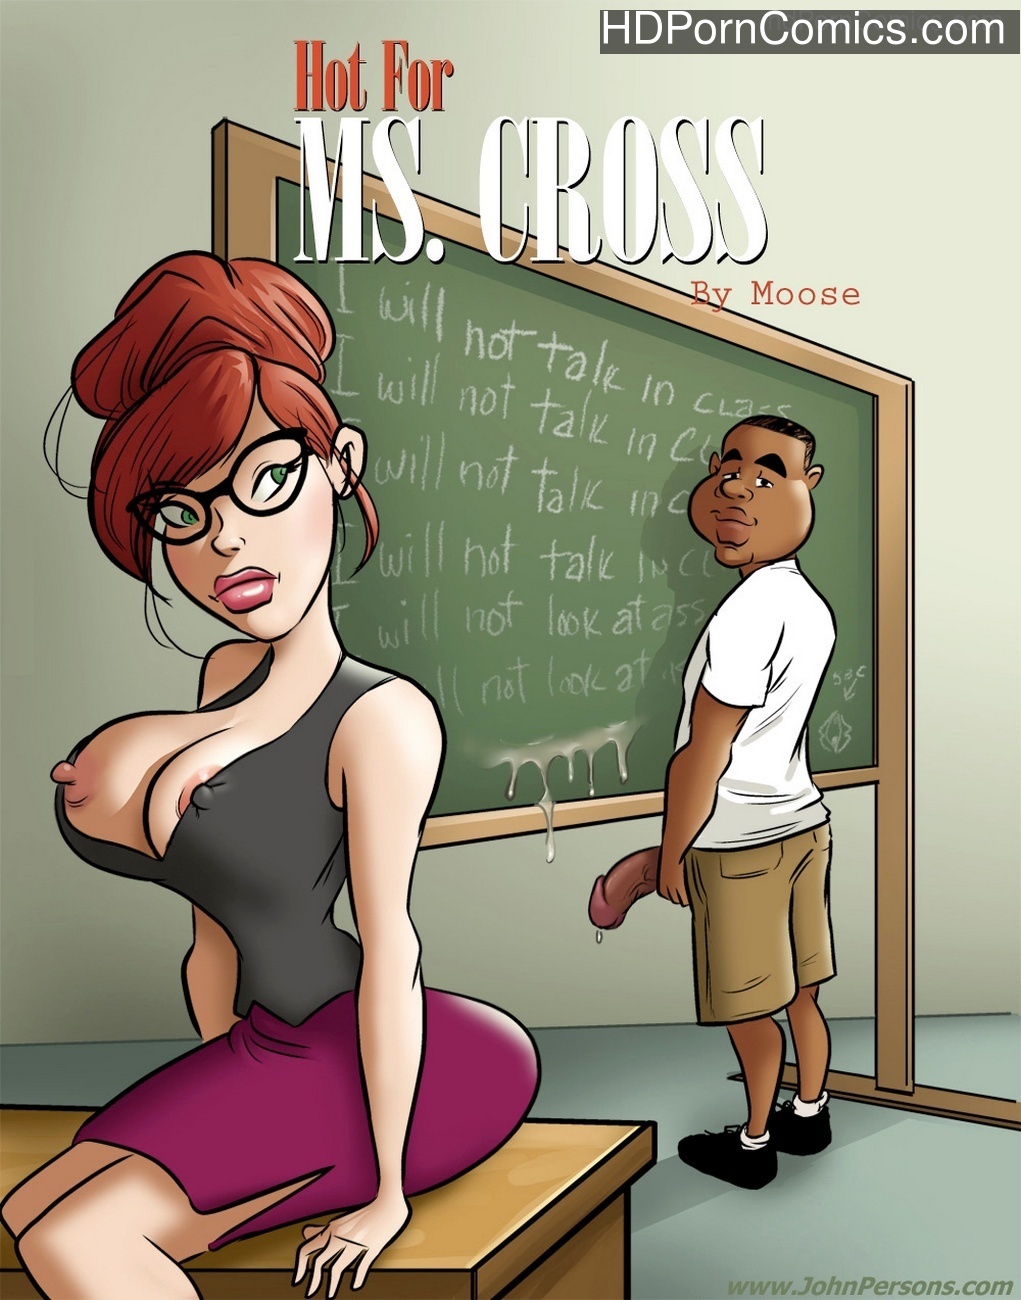 Hot For Ms Cross 1 Sex Comic - HD Porn Comics